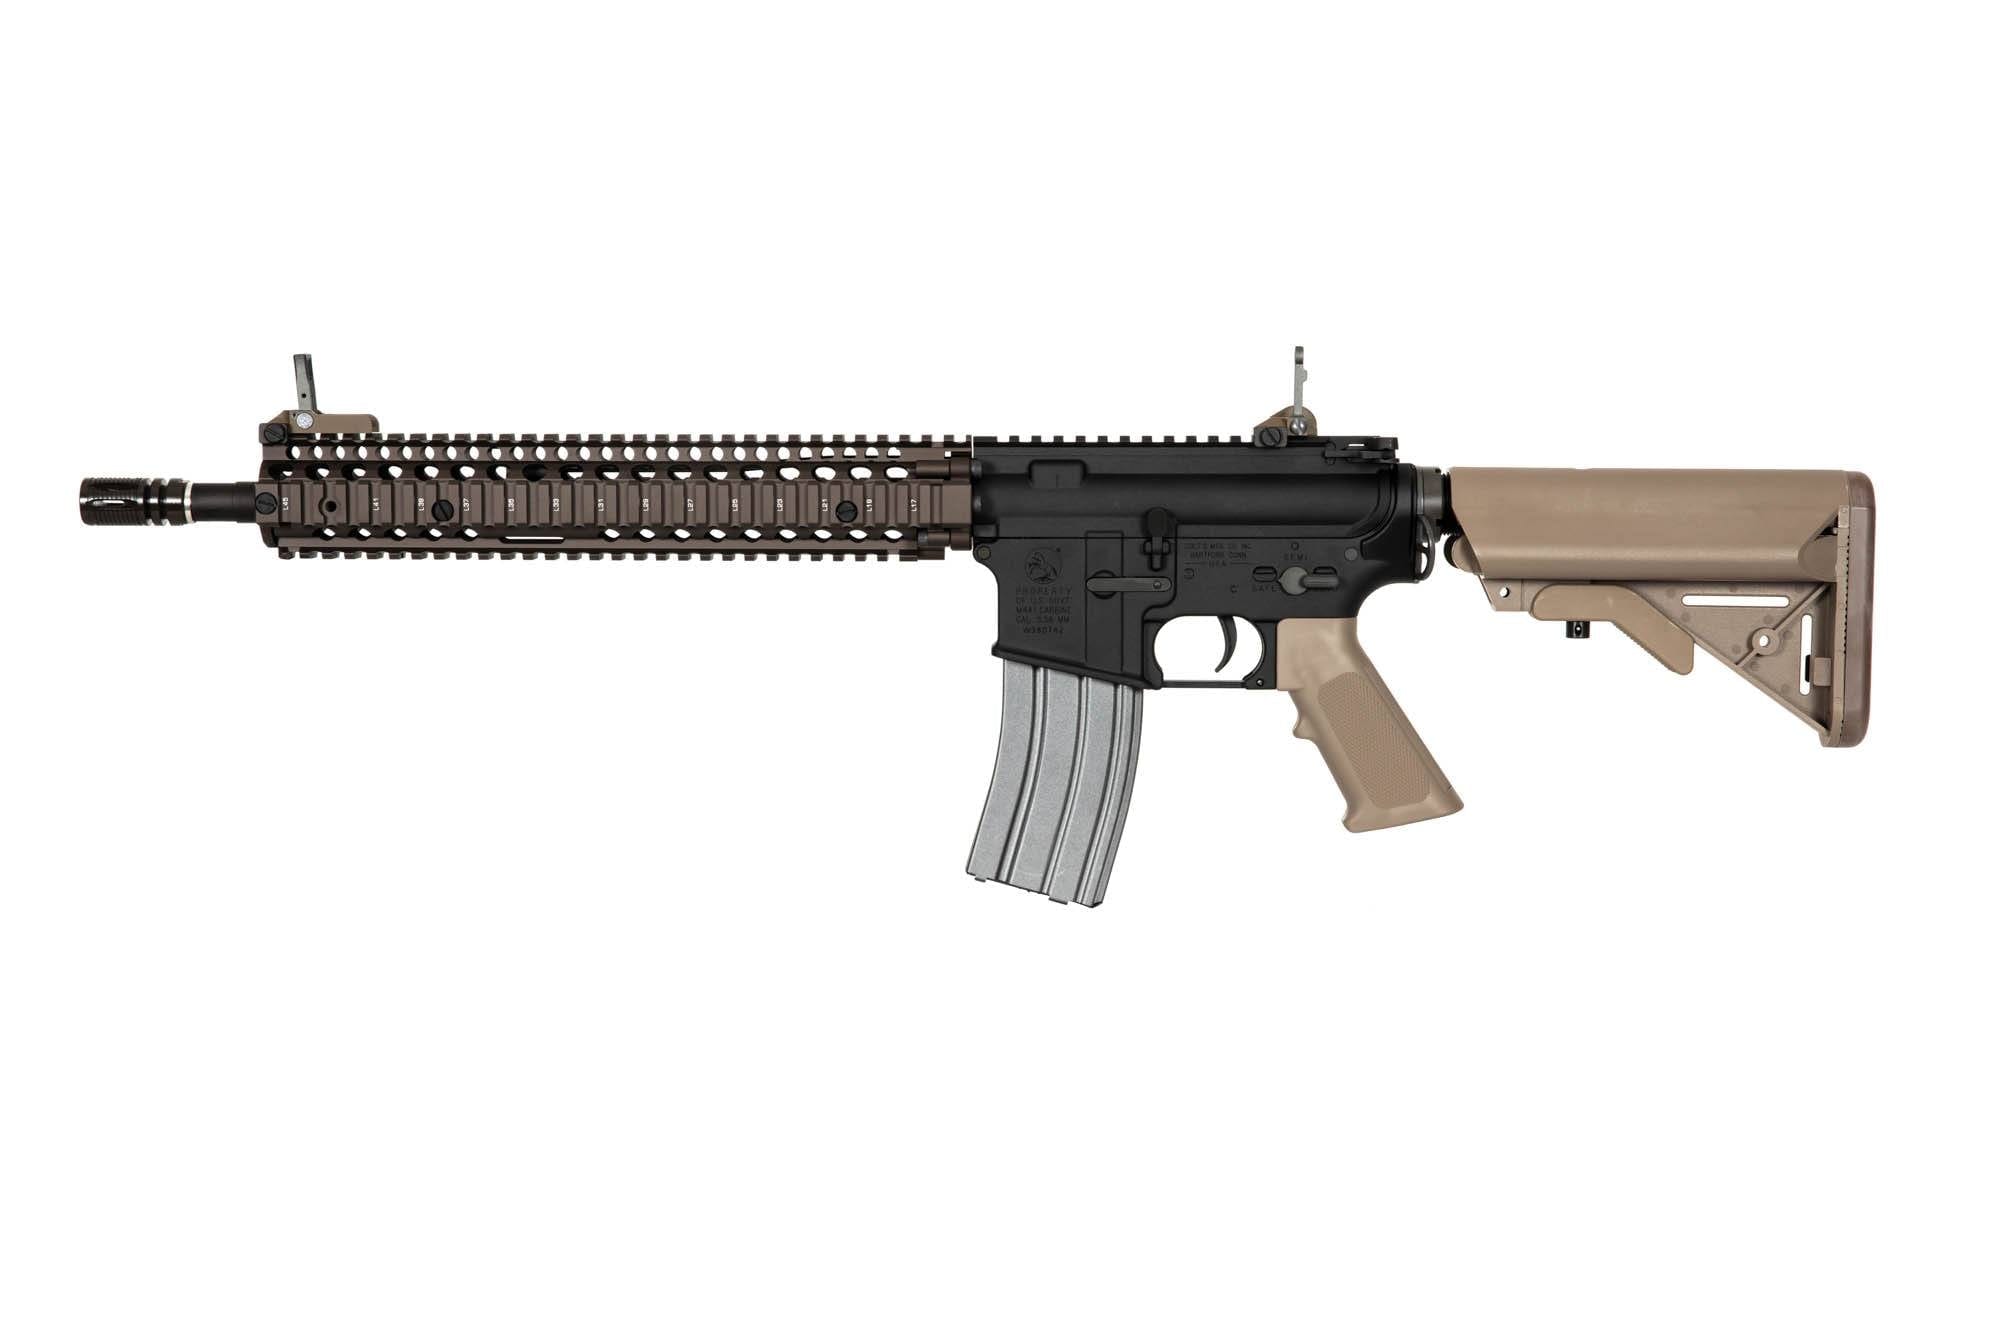 VF1-LM4RISII (Colt M4A1 RIS II) Carbine Replica - FDE